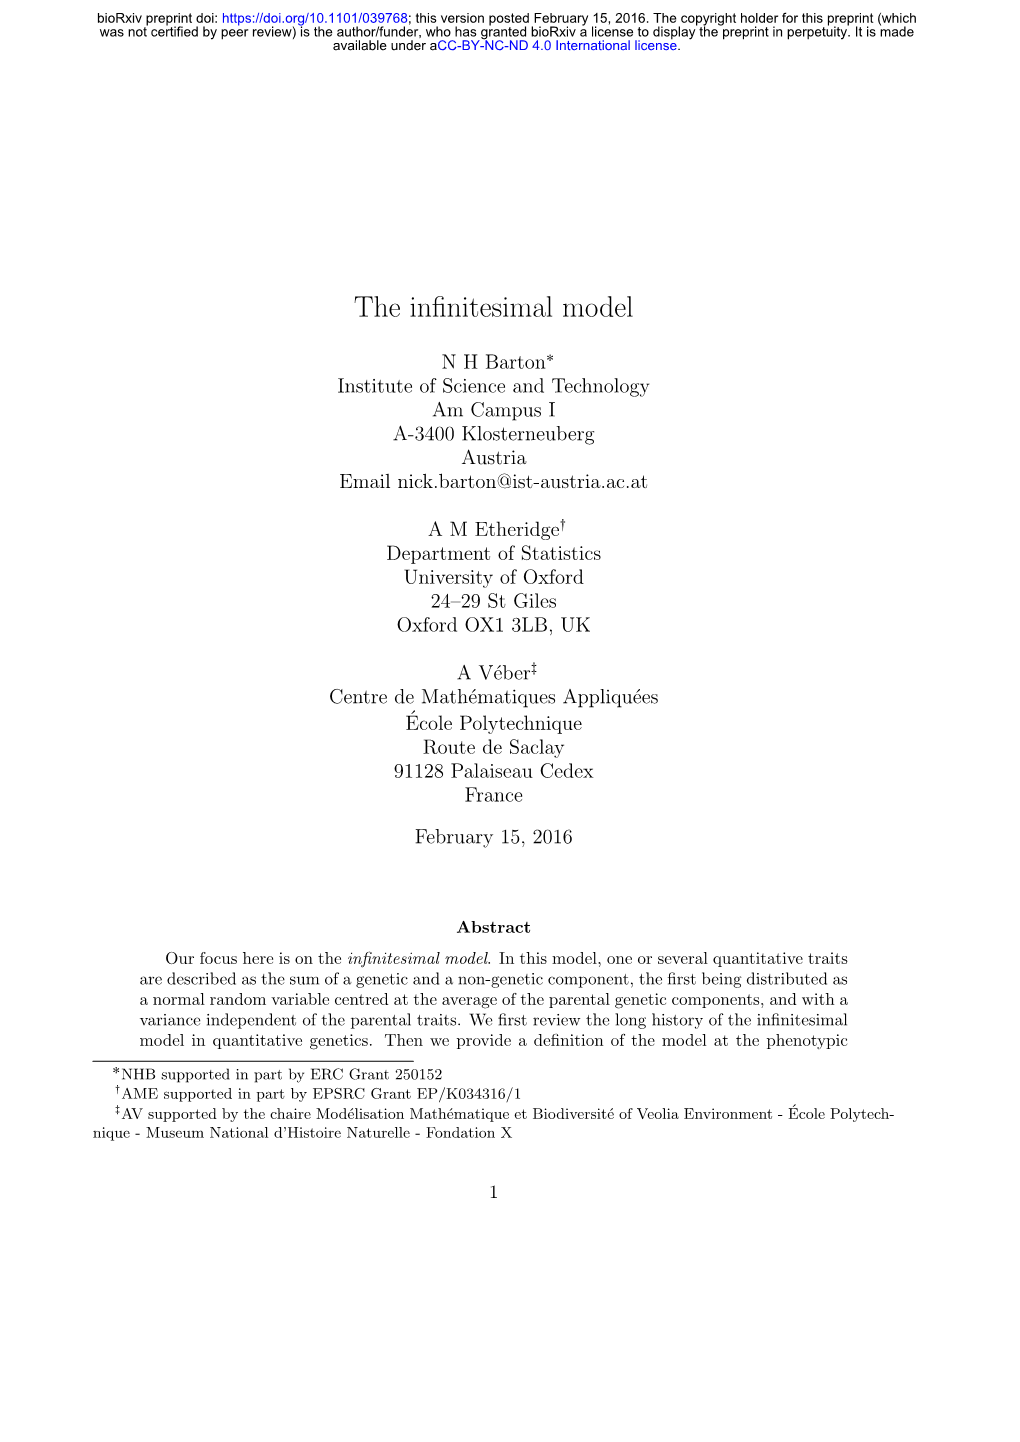 The Infinitesimal Model